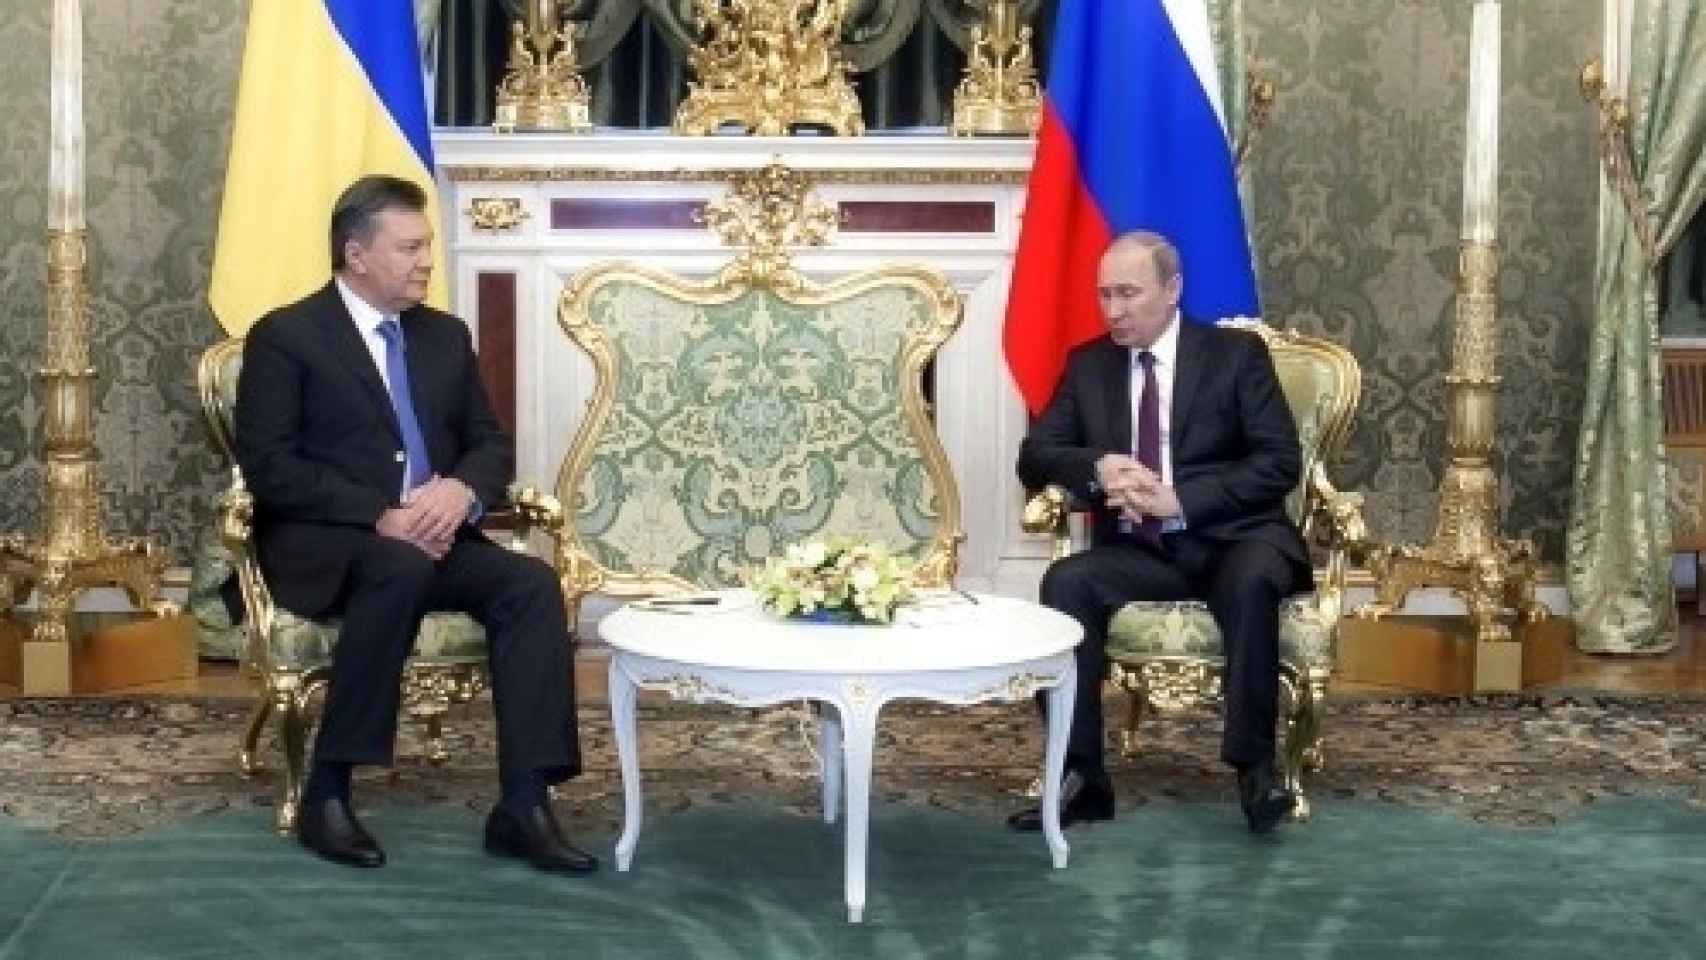 El expresidente de Ucrania, Viktor Yanukovich, junto a Vladimir Putin en Moscú hace unos años.